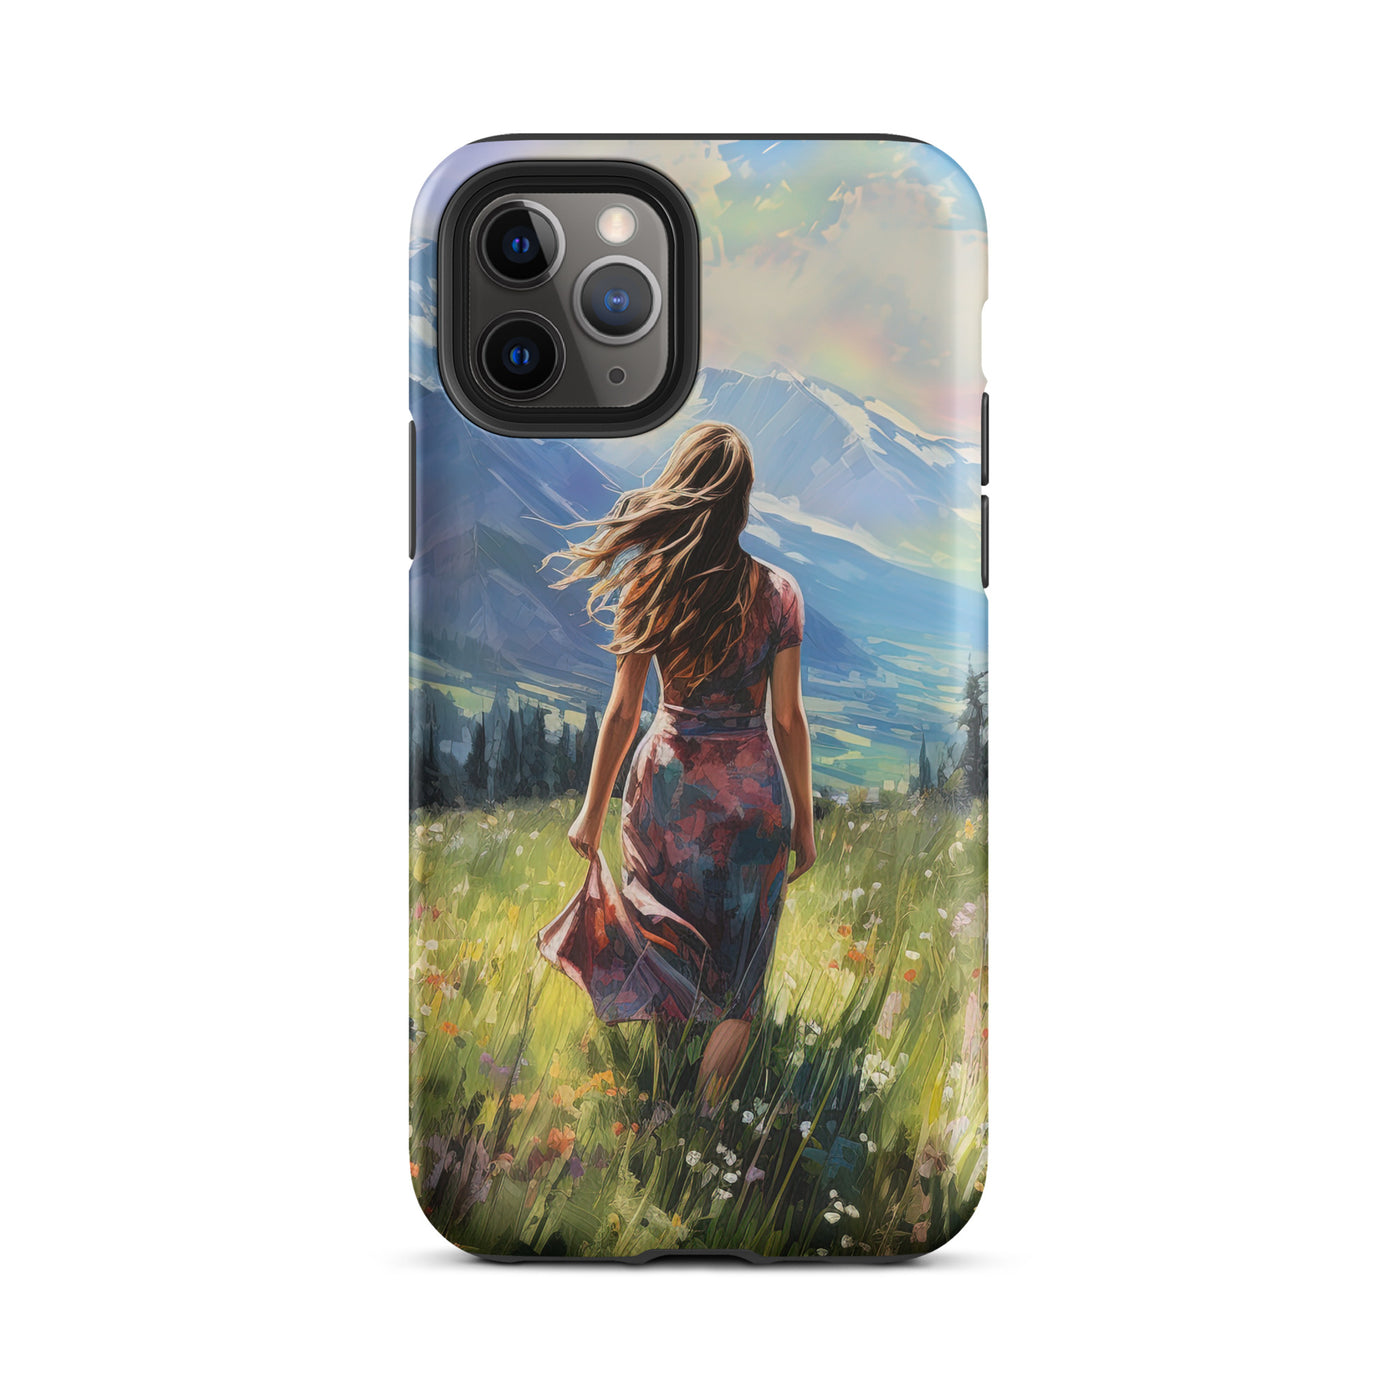 Frau mit langen Kleid im Feld mit Blumen - Berge im Hintergrund - Malerei - iPhone Schutzhülle (robust) berge xxx iPhone 11 Pro